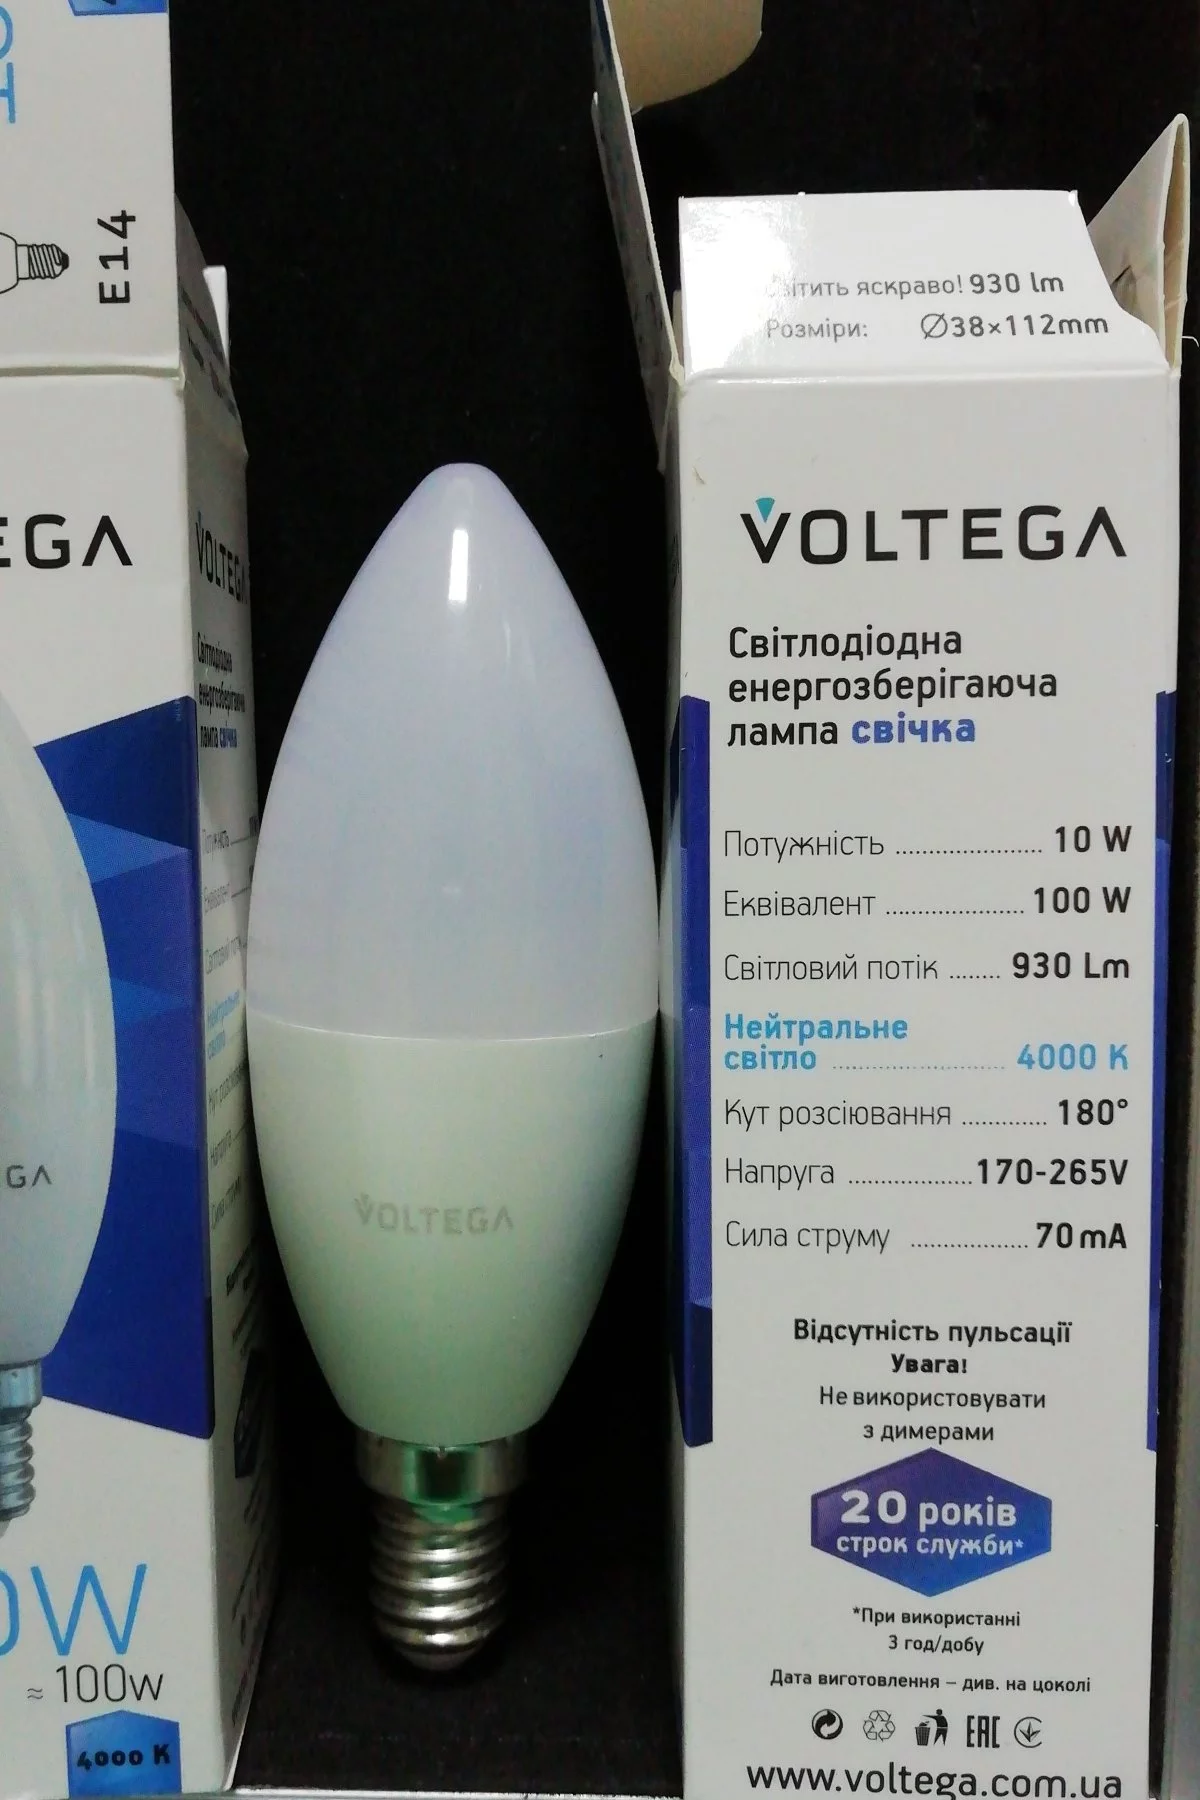   
                        Лампа VOLTEGA   17040    
                        .  
                                                                                                Материал: Пластик.                          фото 2